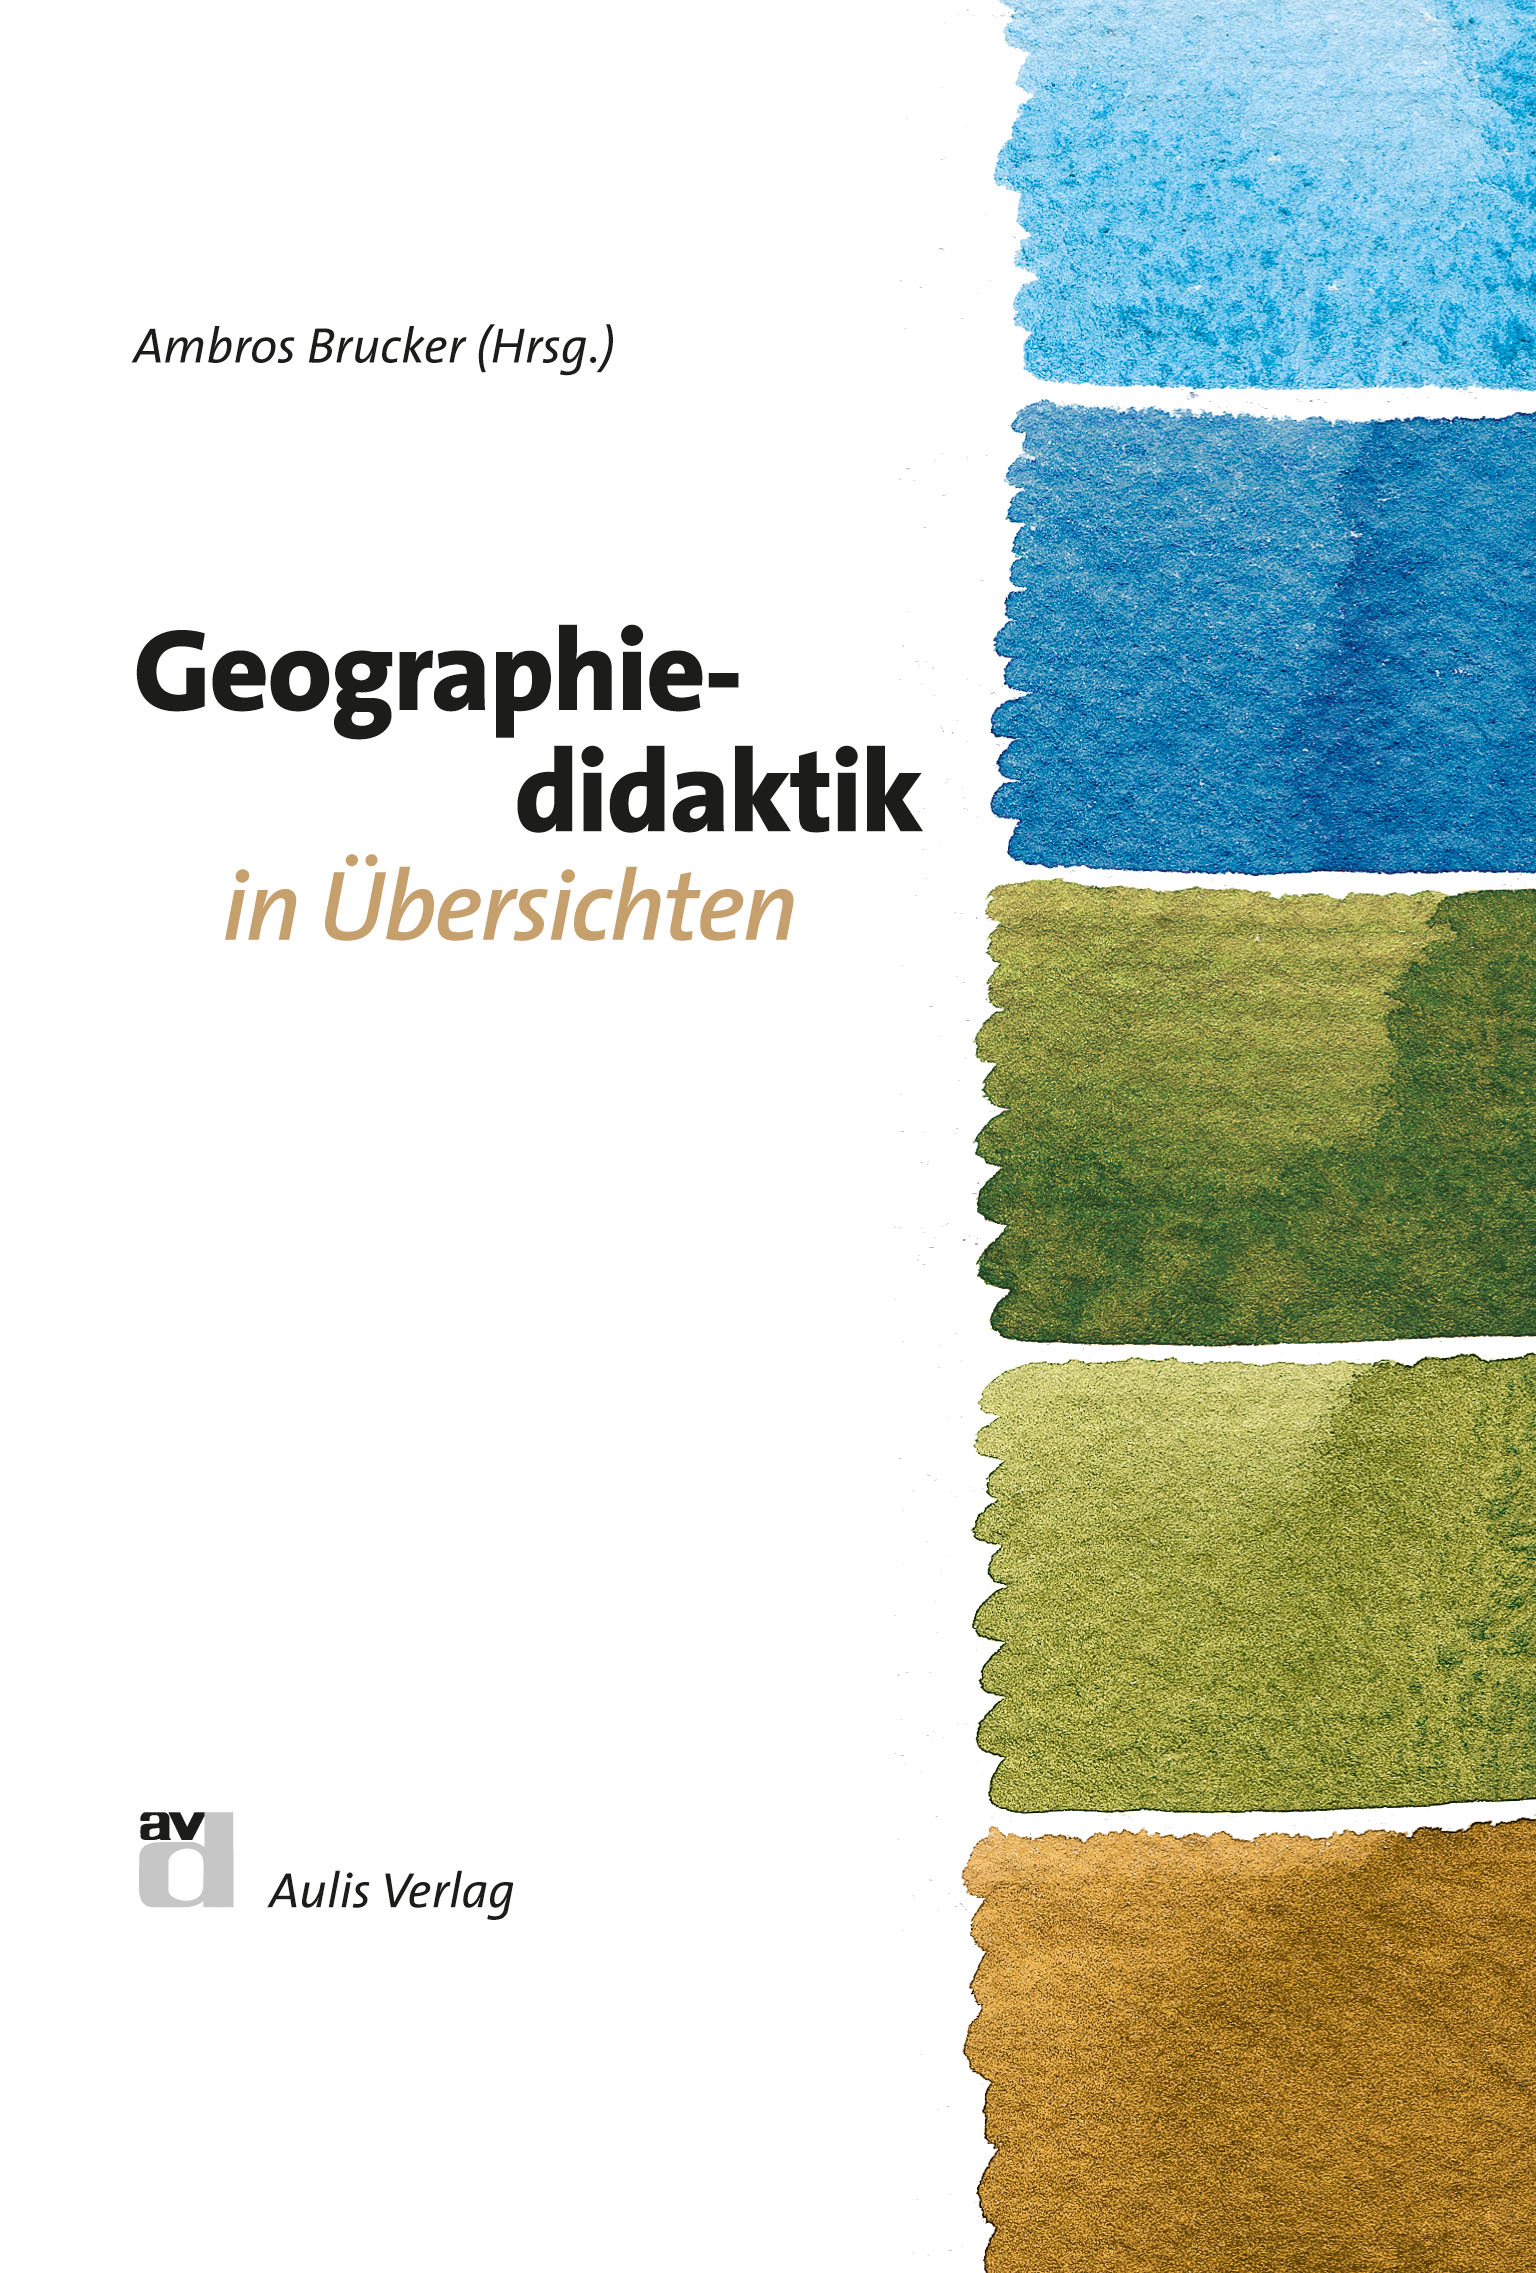 Geographie allgemein / Geographiedidaktik in Übersichten